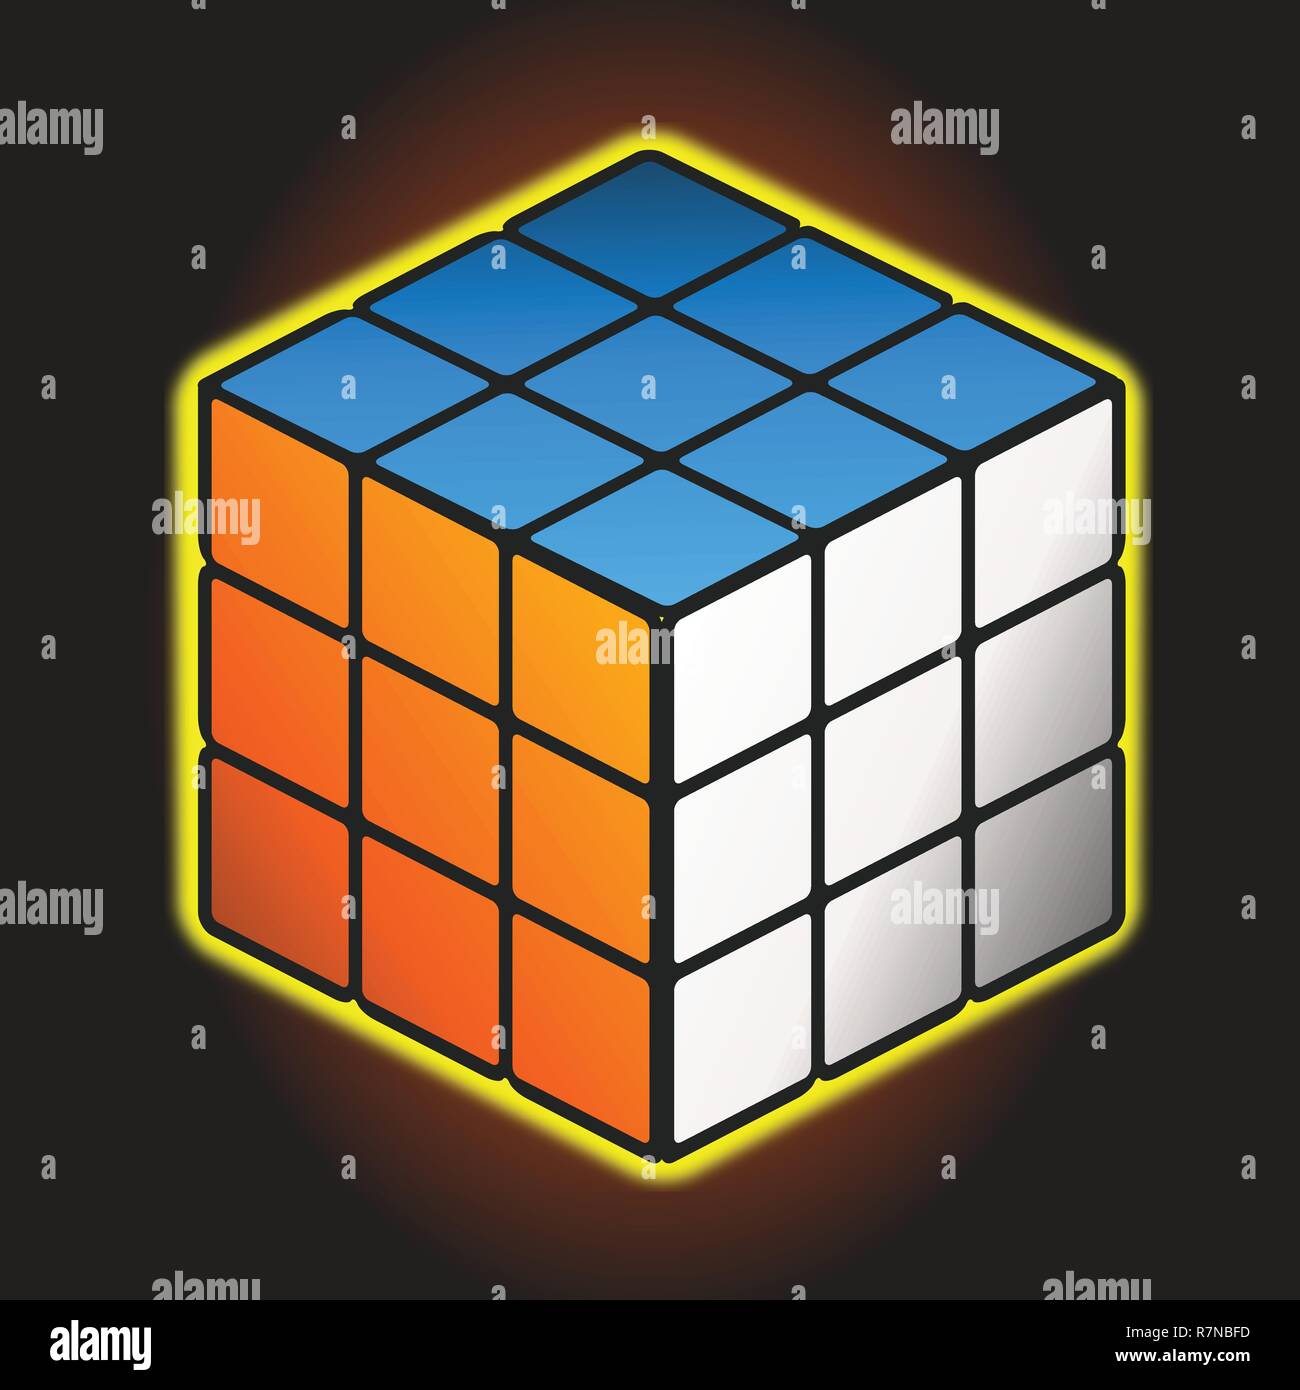 Vektor isometrische Darstellung einen Rubik's Cube. Auf dunklem Hintergrund isoliert Stock Vektor